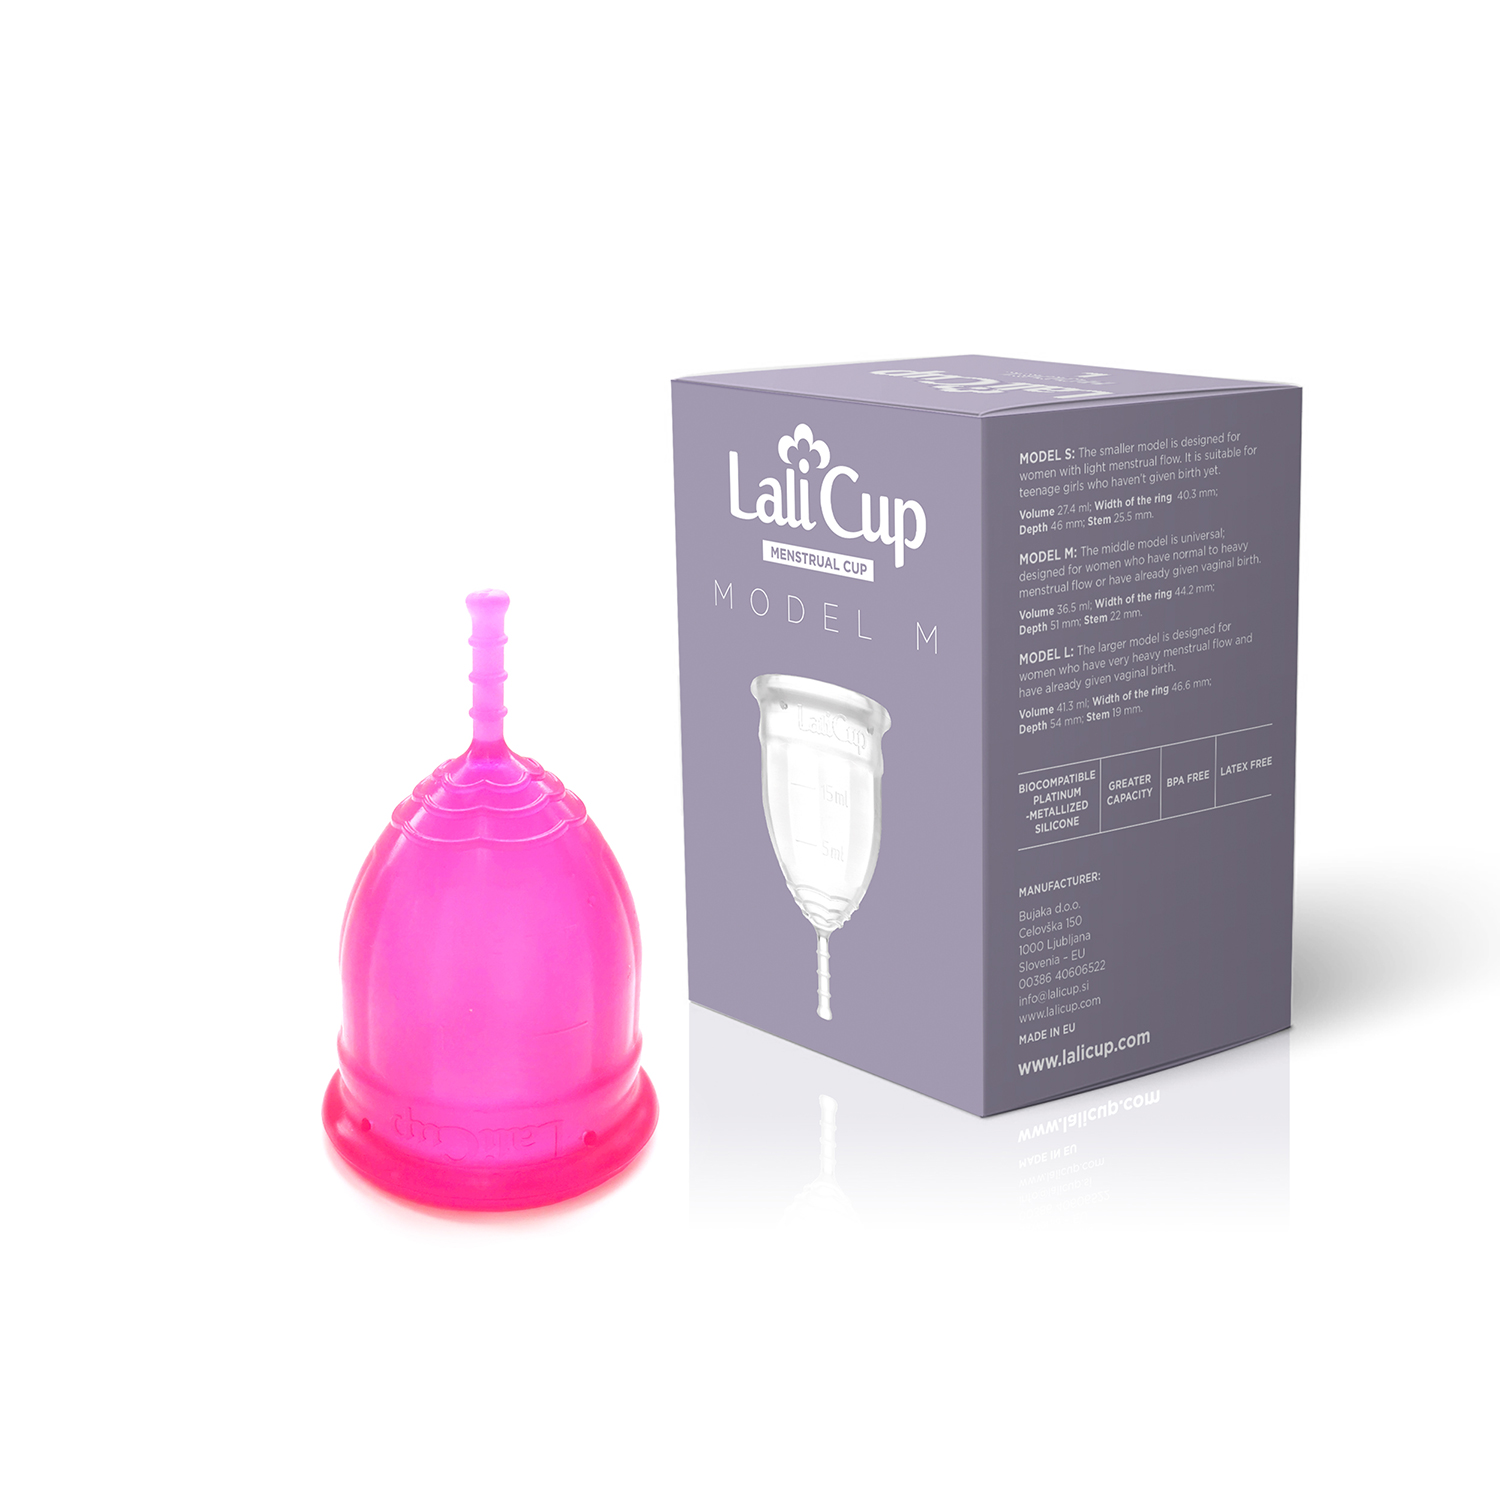 Kako se koristi LaliCup menstrualna čašica